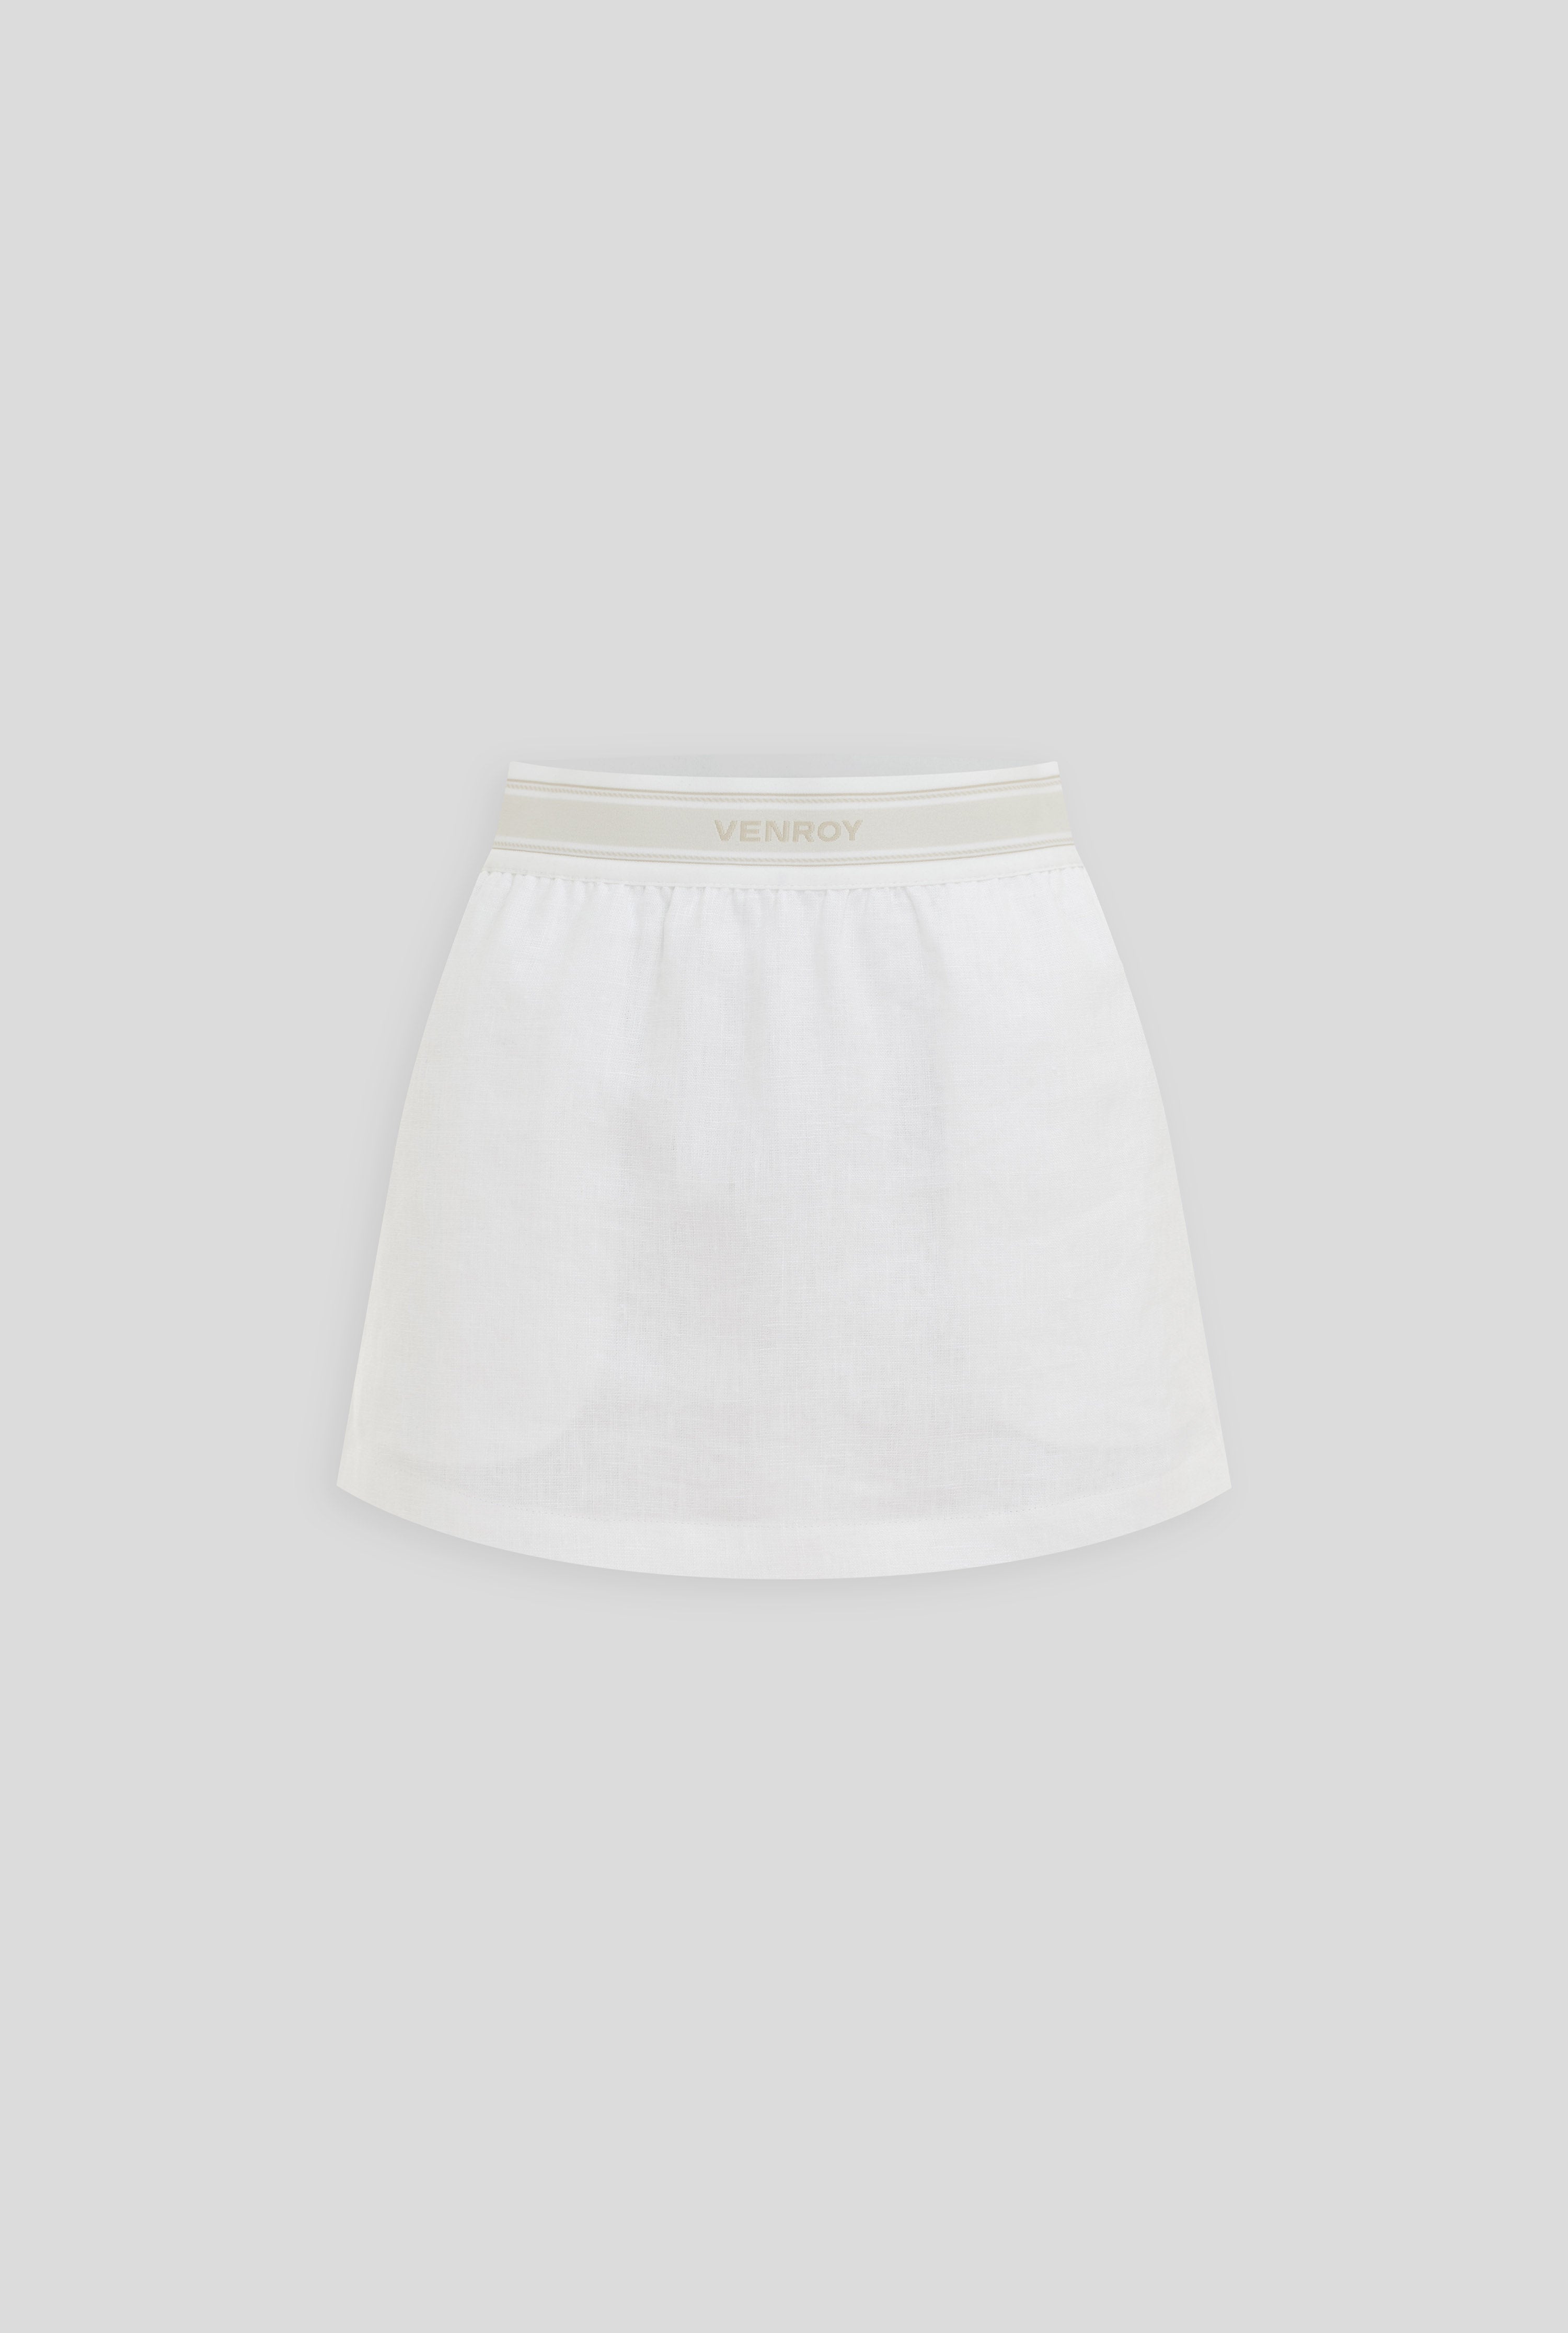 Lounge Skirt - White/Venroy Logo